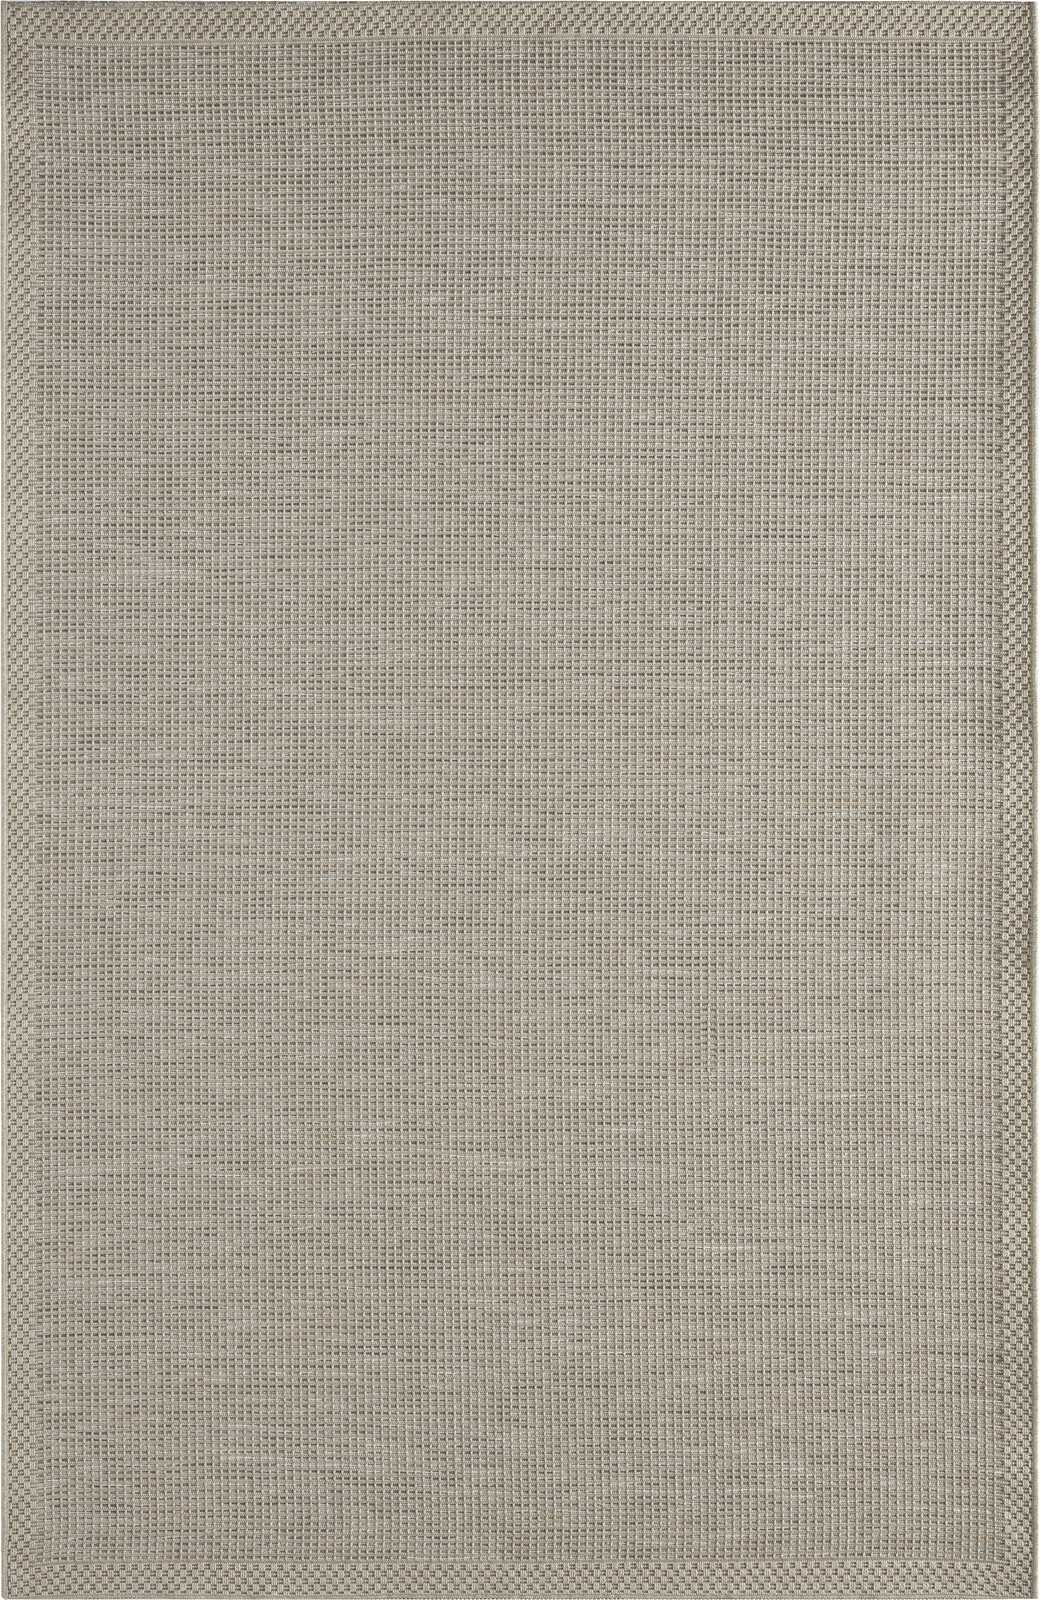             Flatweave Vloerkleed voor Buiten in Grijs - 160 x 120 cm
        